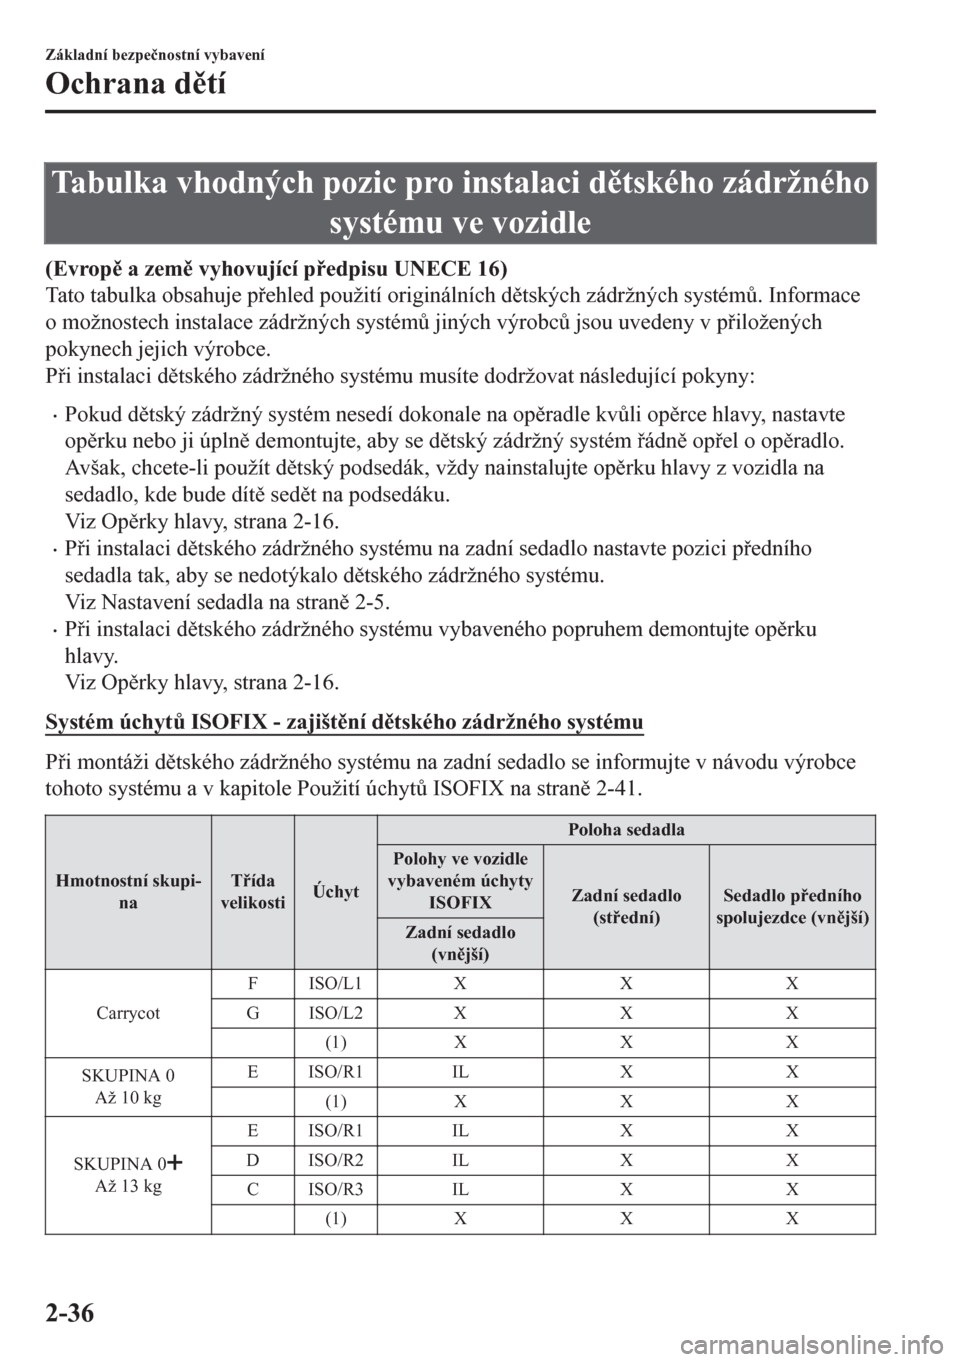 MAZDA MODEL CX-5 2018  Návod k obsluze (in Czech) Tabulka vhodných pozic pro instalaci dtského zádržného
systému ve vozidle
(Evrop a zem vyhovující pedpisu UNECE 16)
Tato tabulka obsahuje pehled použití originálních dtských z